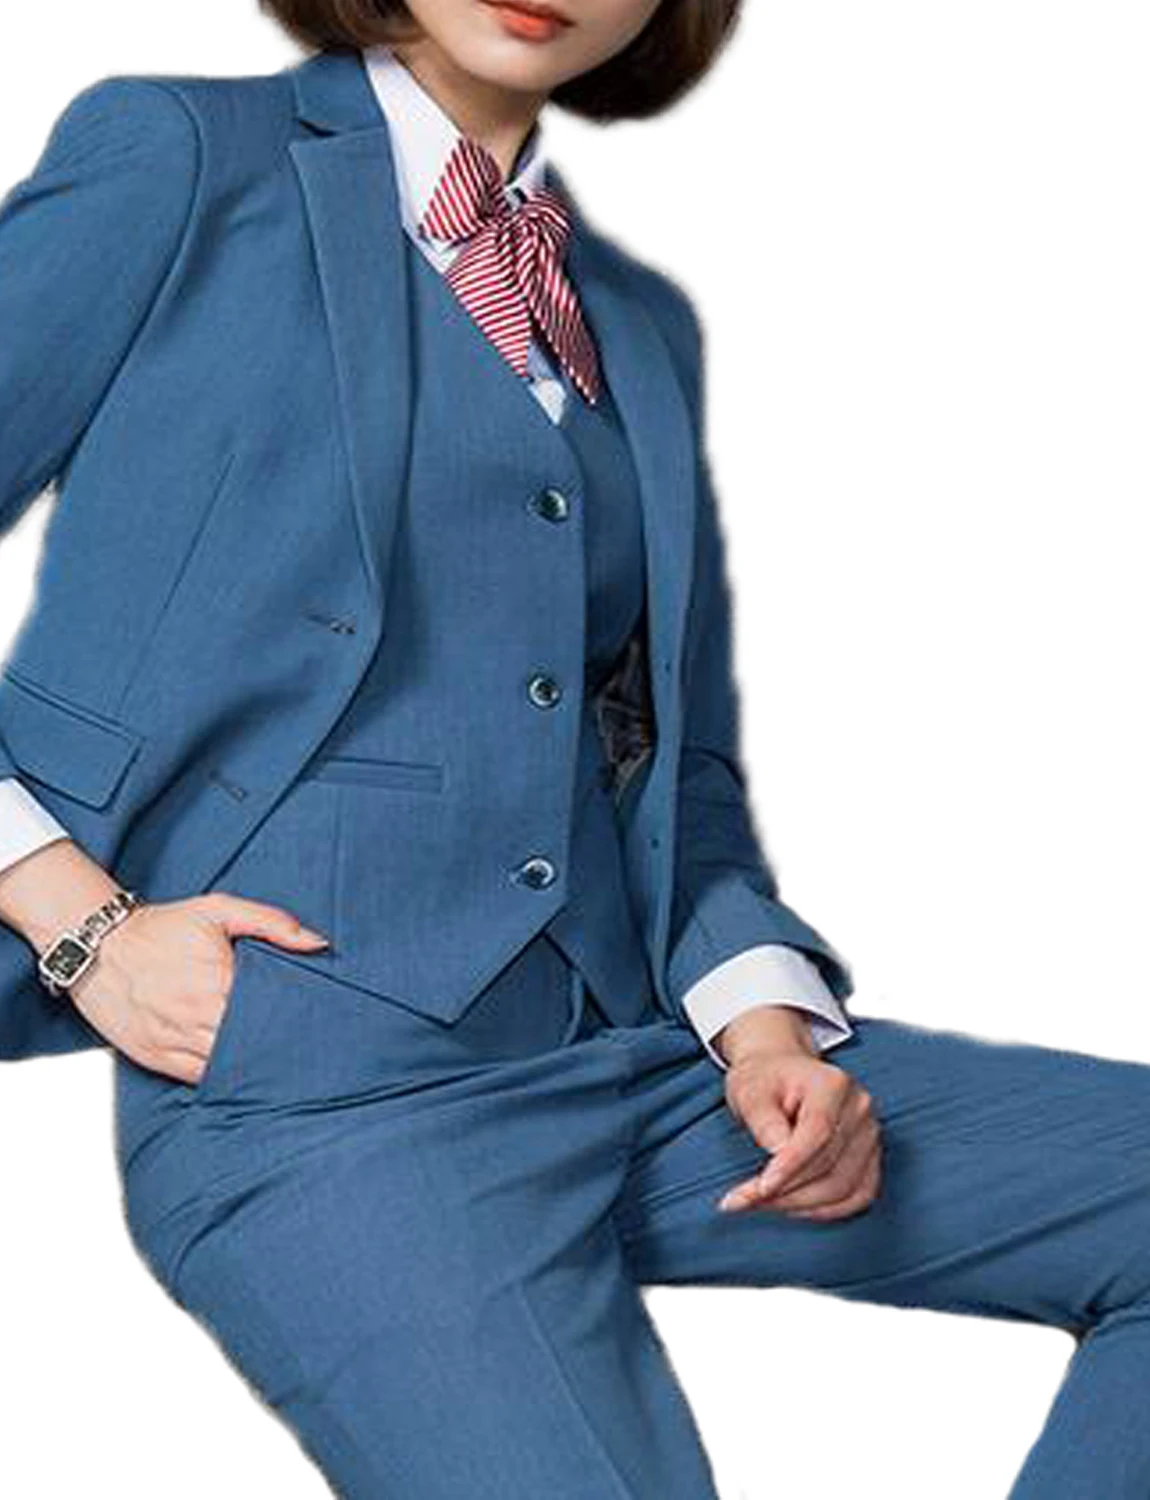 Women's Suit Multicolor 3 Piece Elegant Business Office Lady Suit Set For Work